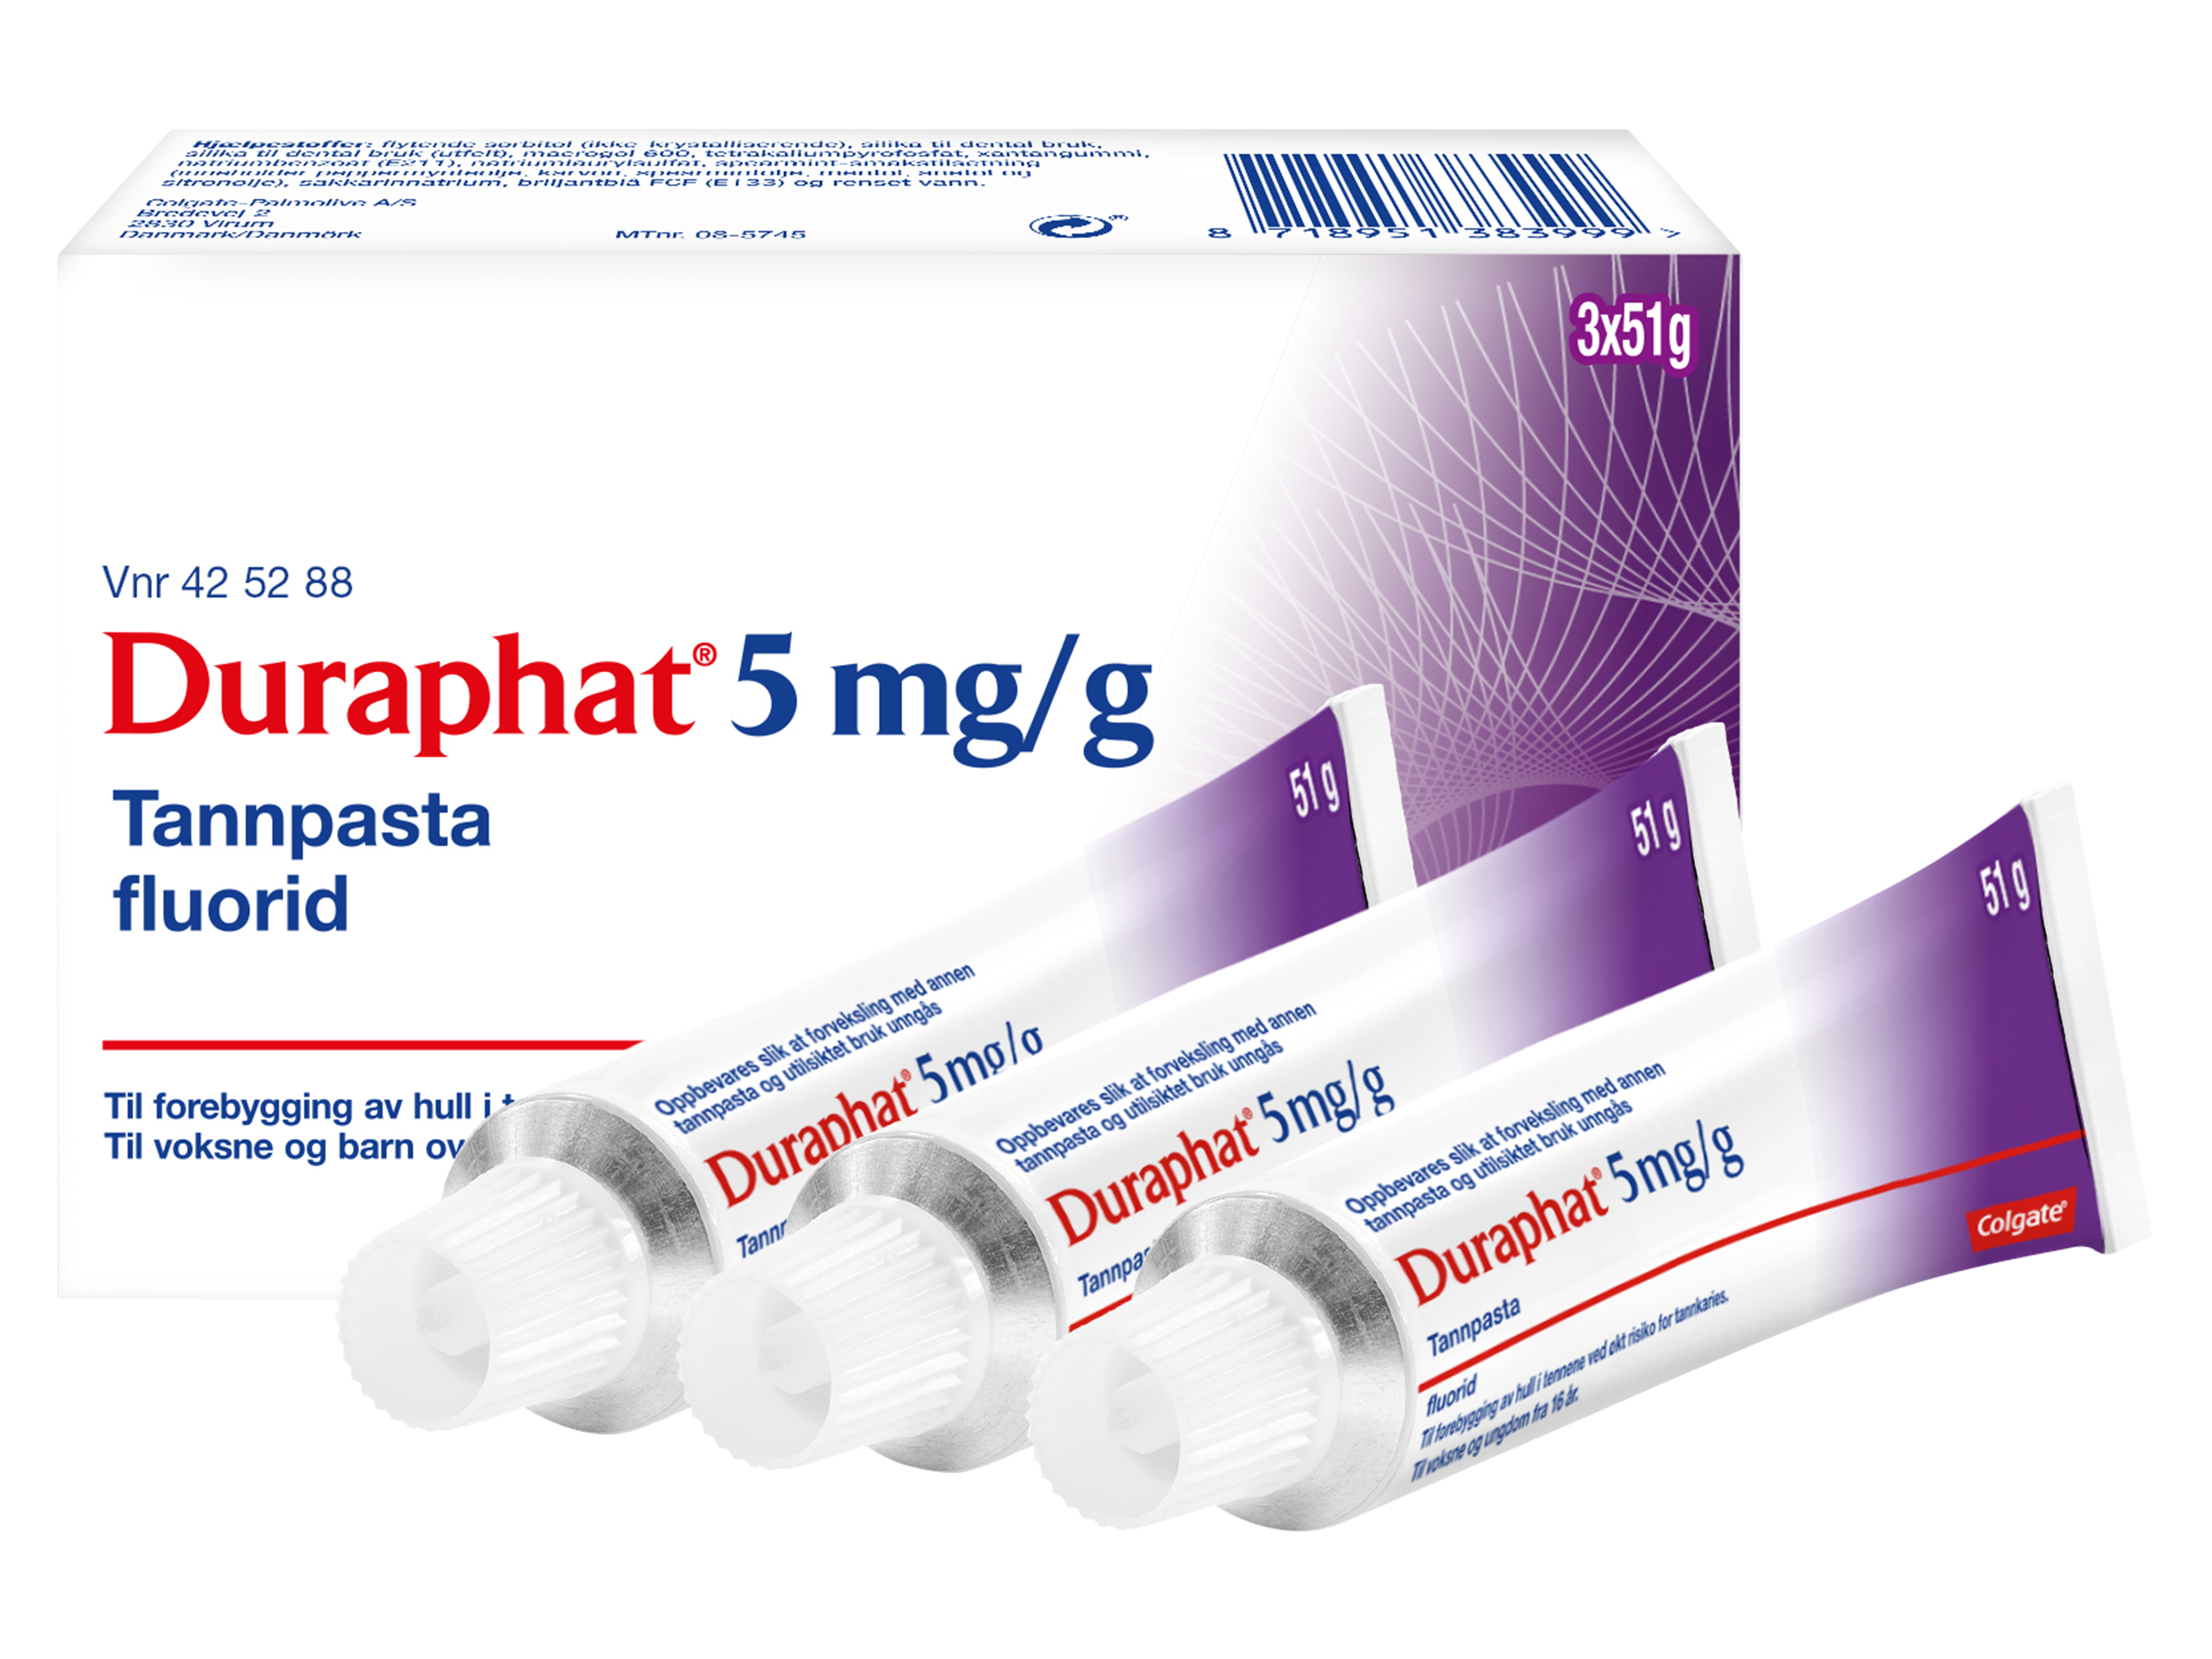 Duraphat Reseptfri fluortannpasta 5 mg/g, gram